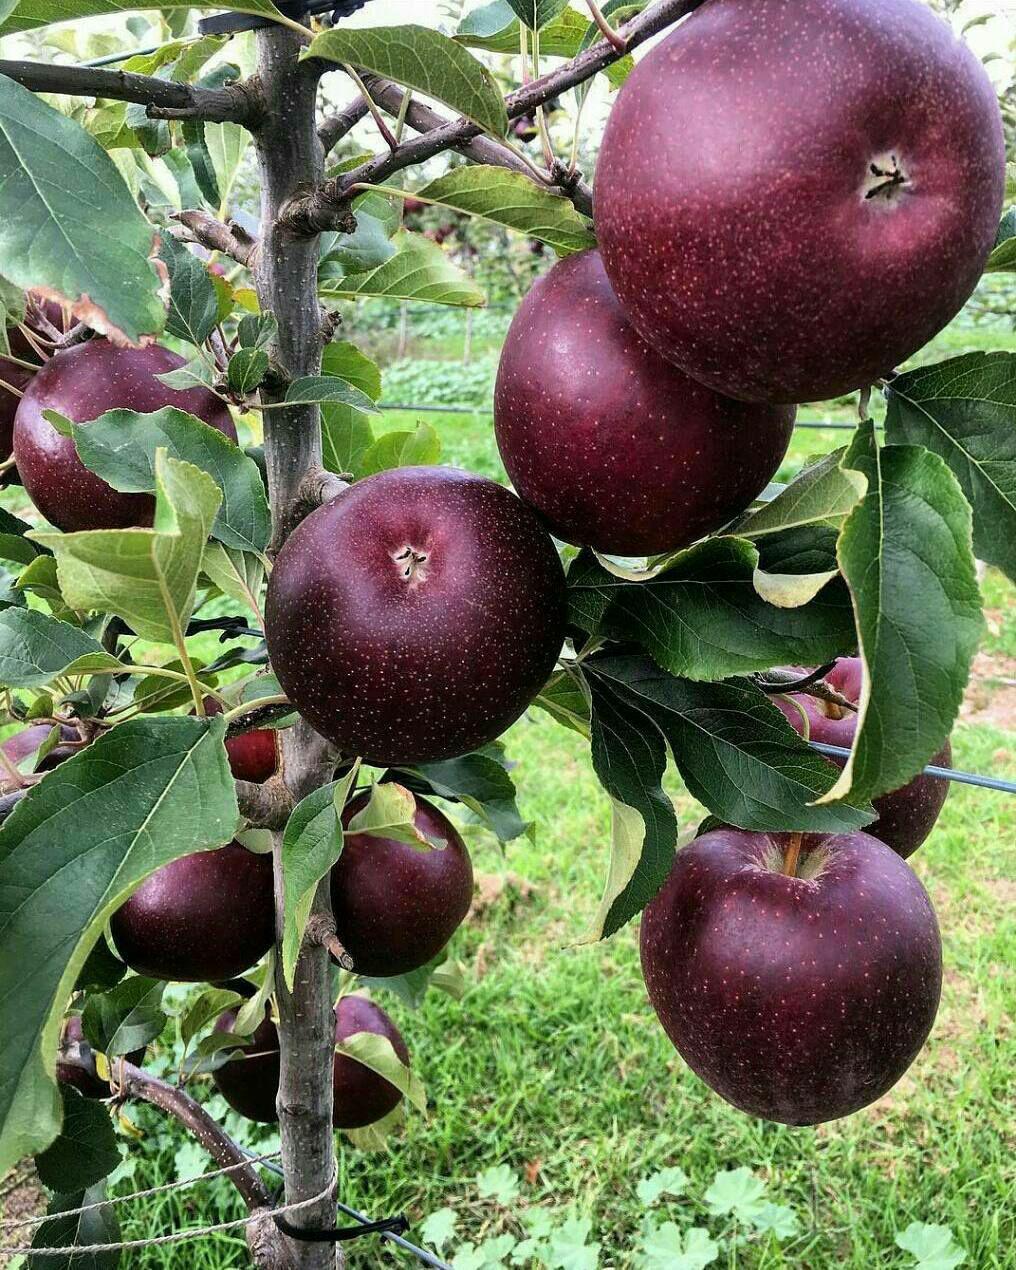 430 هزار تن میوه در استان اردبیل تولید می شود